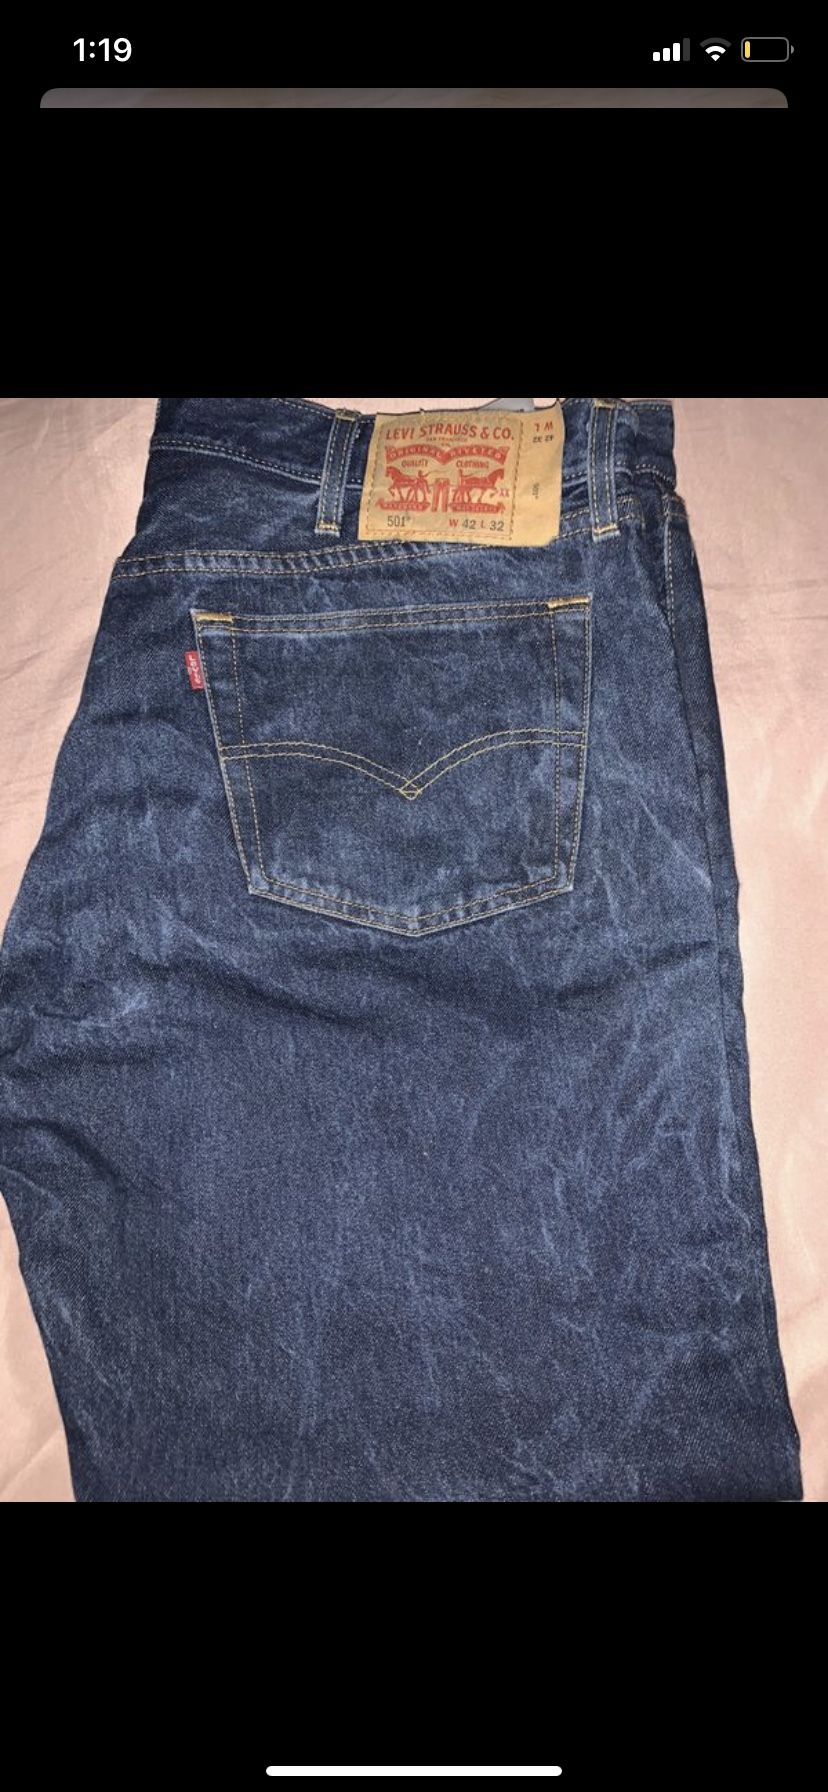 Levis Jeans 501 Size W42 L32